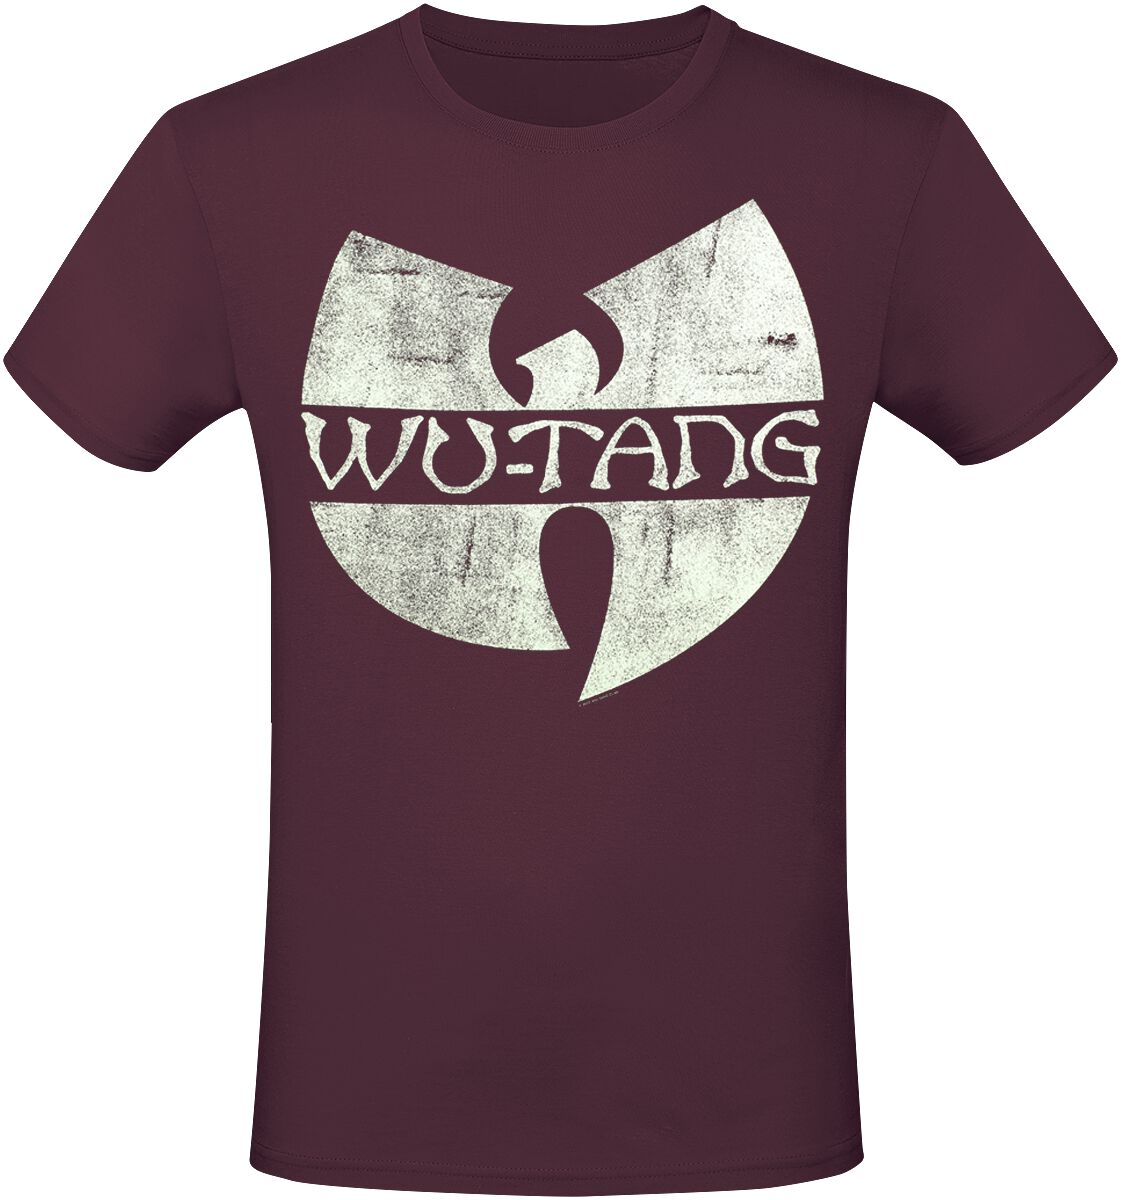 Wu-Tang Clan T-Shirt - Logo - S bis XXL - für Männer - Größe S - rot  - Lizenziertes Merchandise!